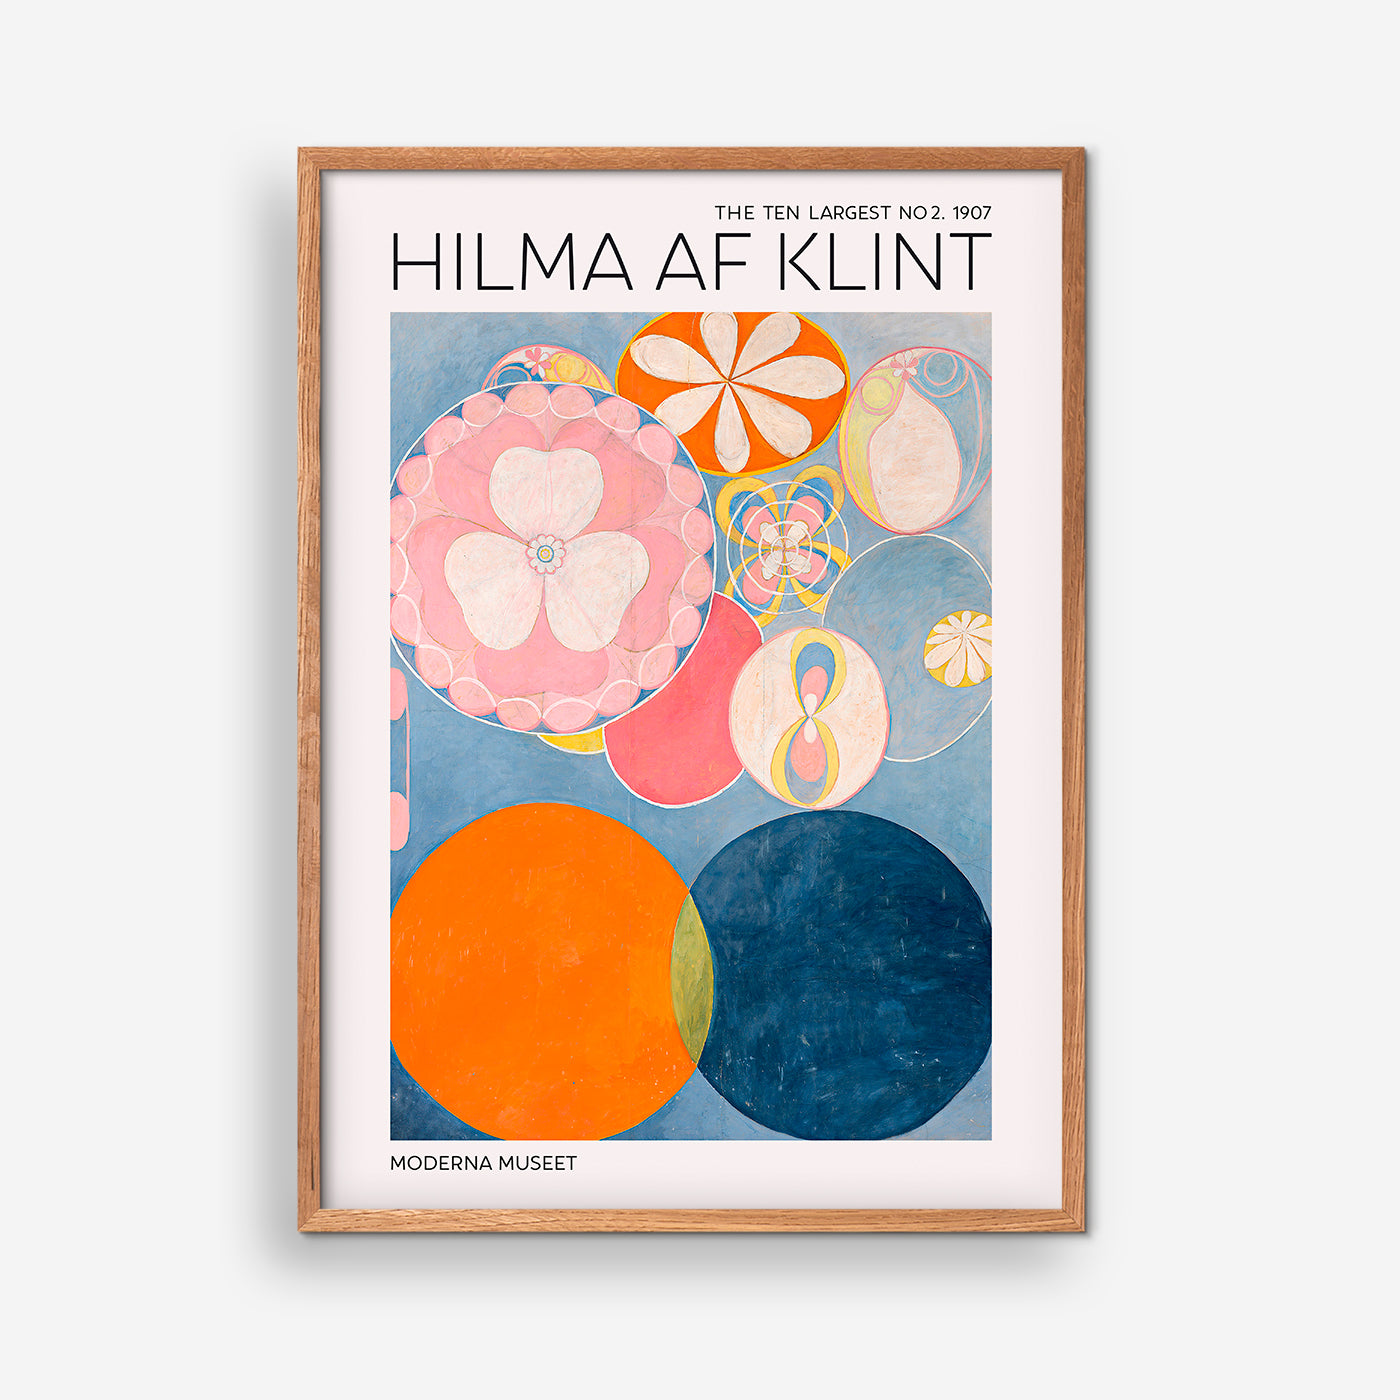 The Ten Largest No. 2 - Hilma Of Klint